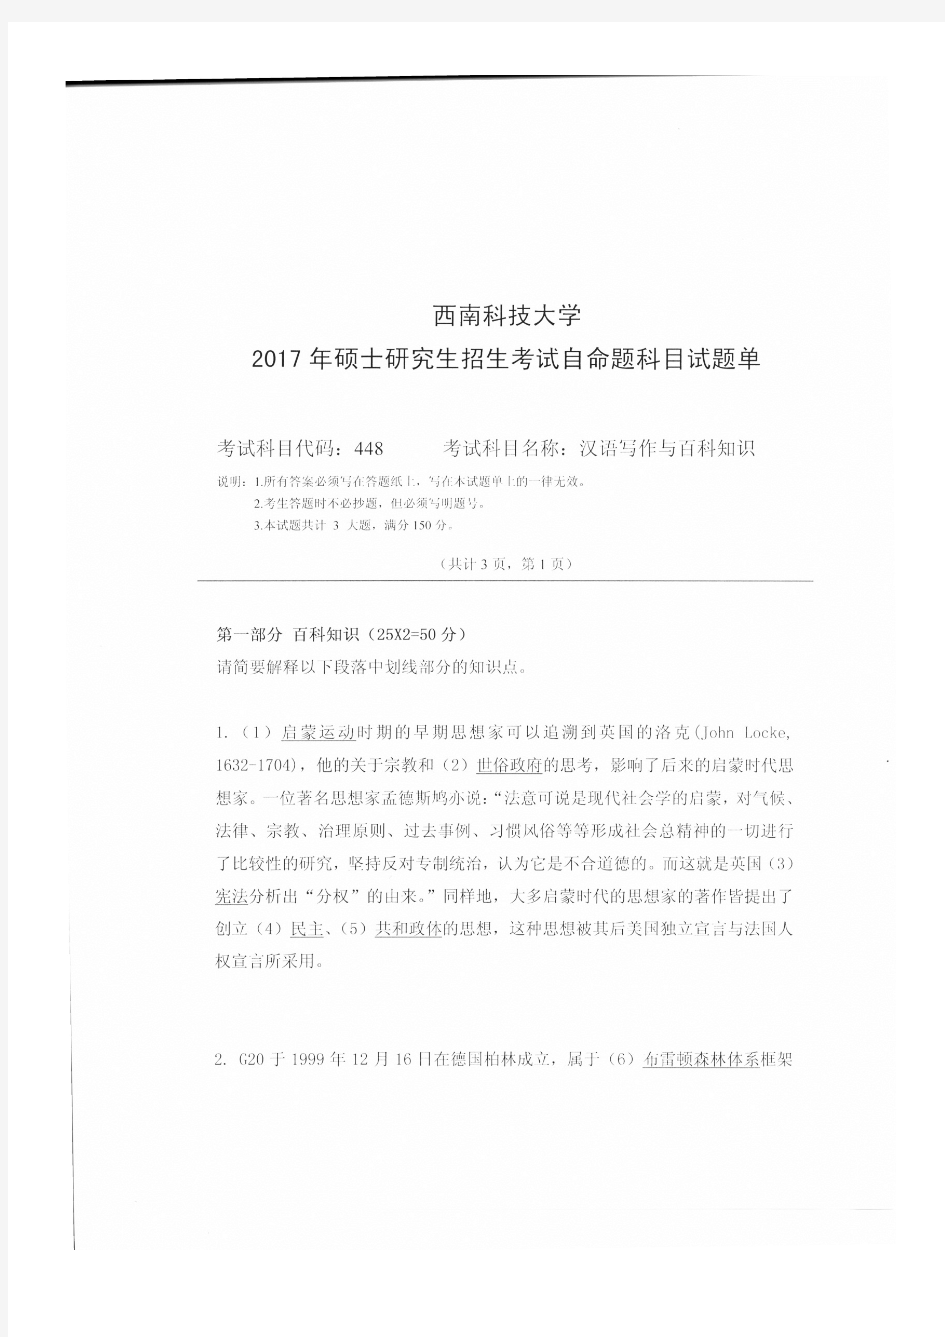 西南科技大学 448汉语写作与百科知识2017 考研专业课真题